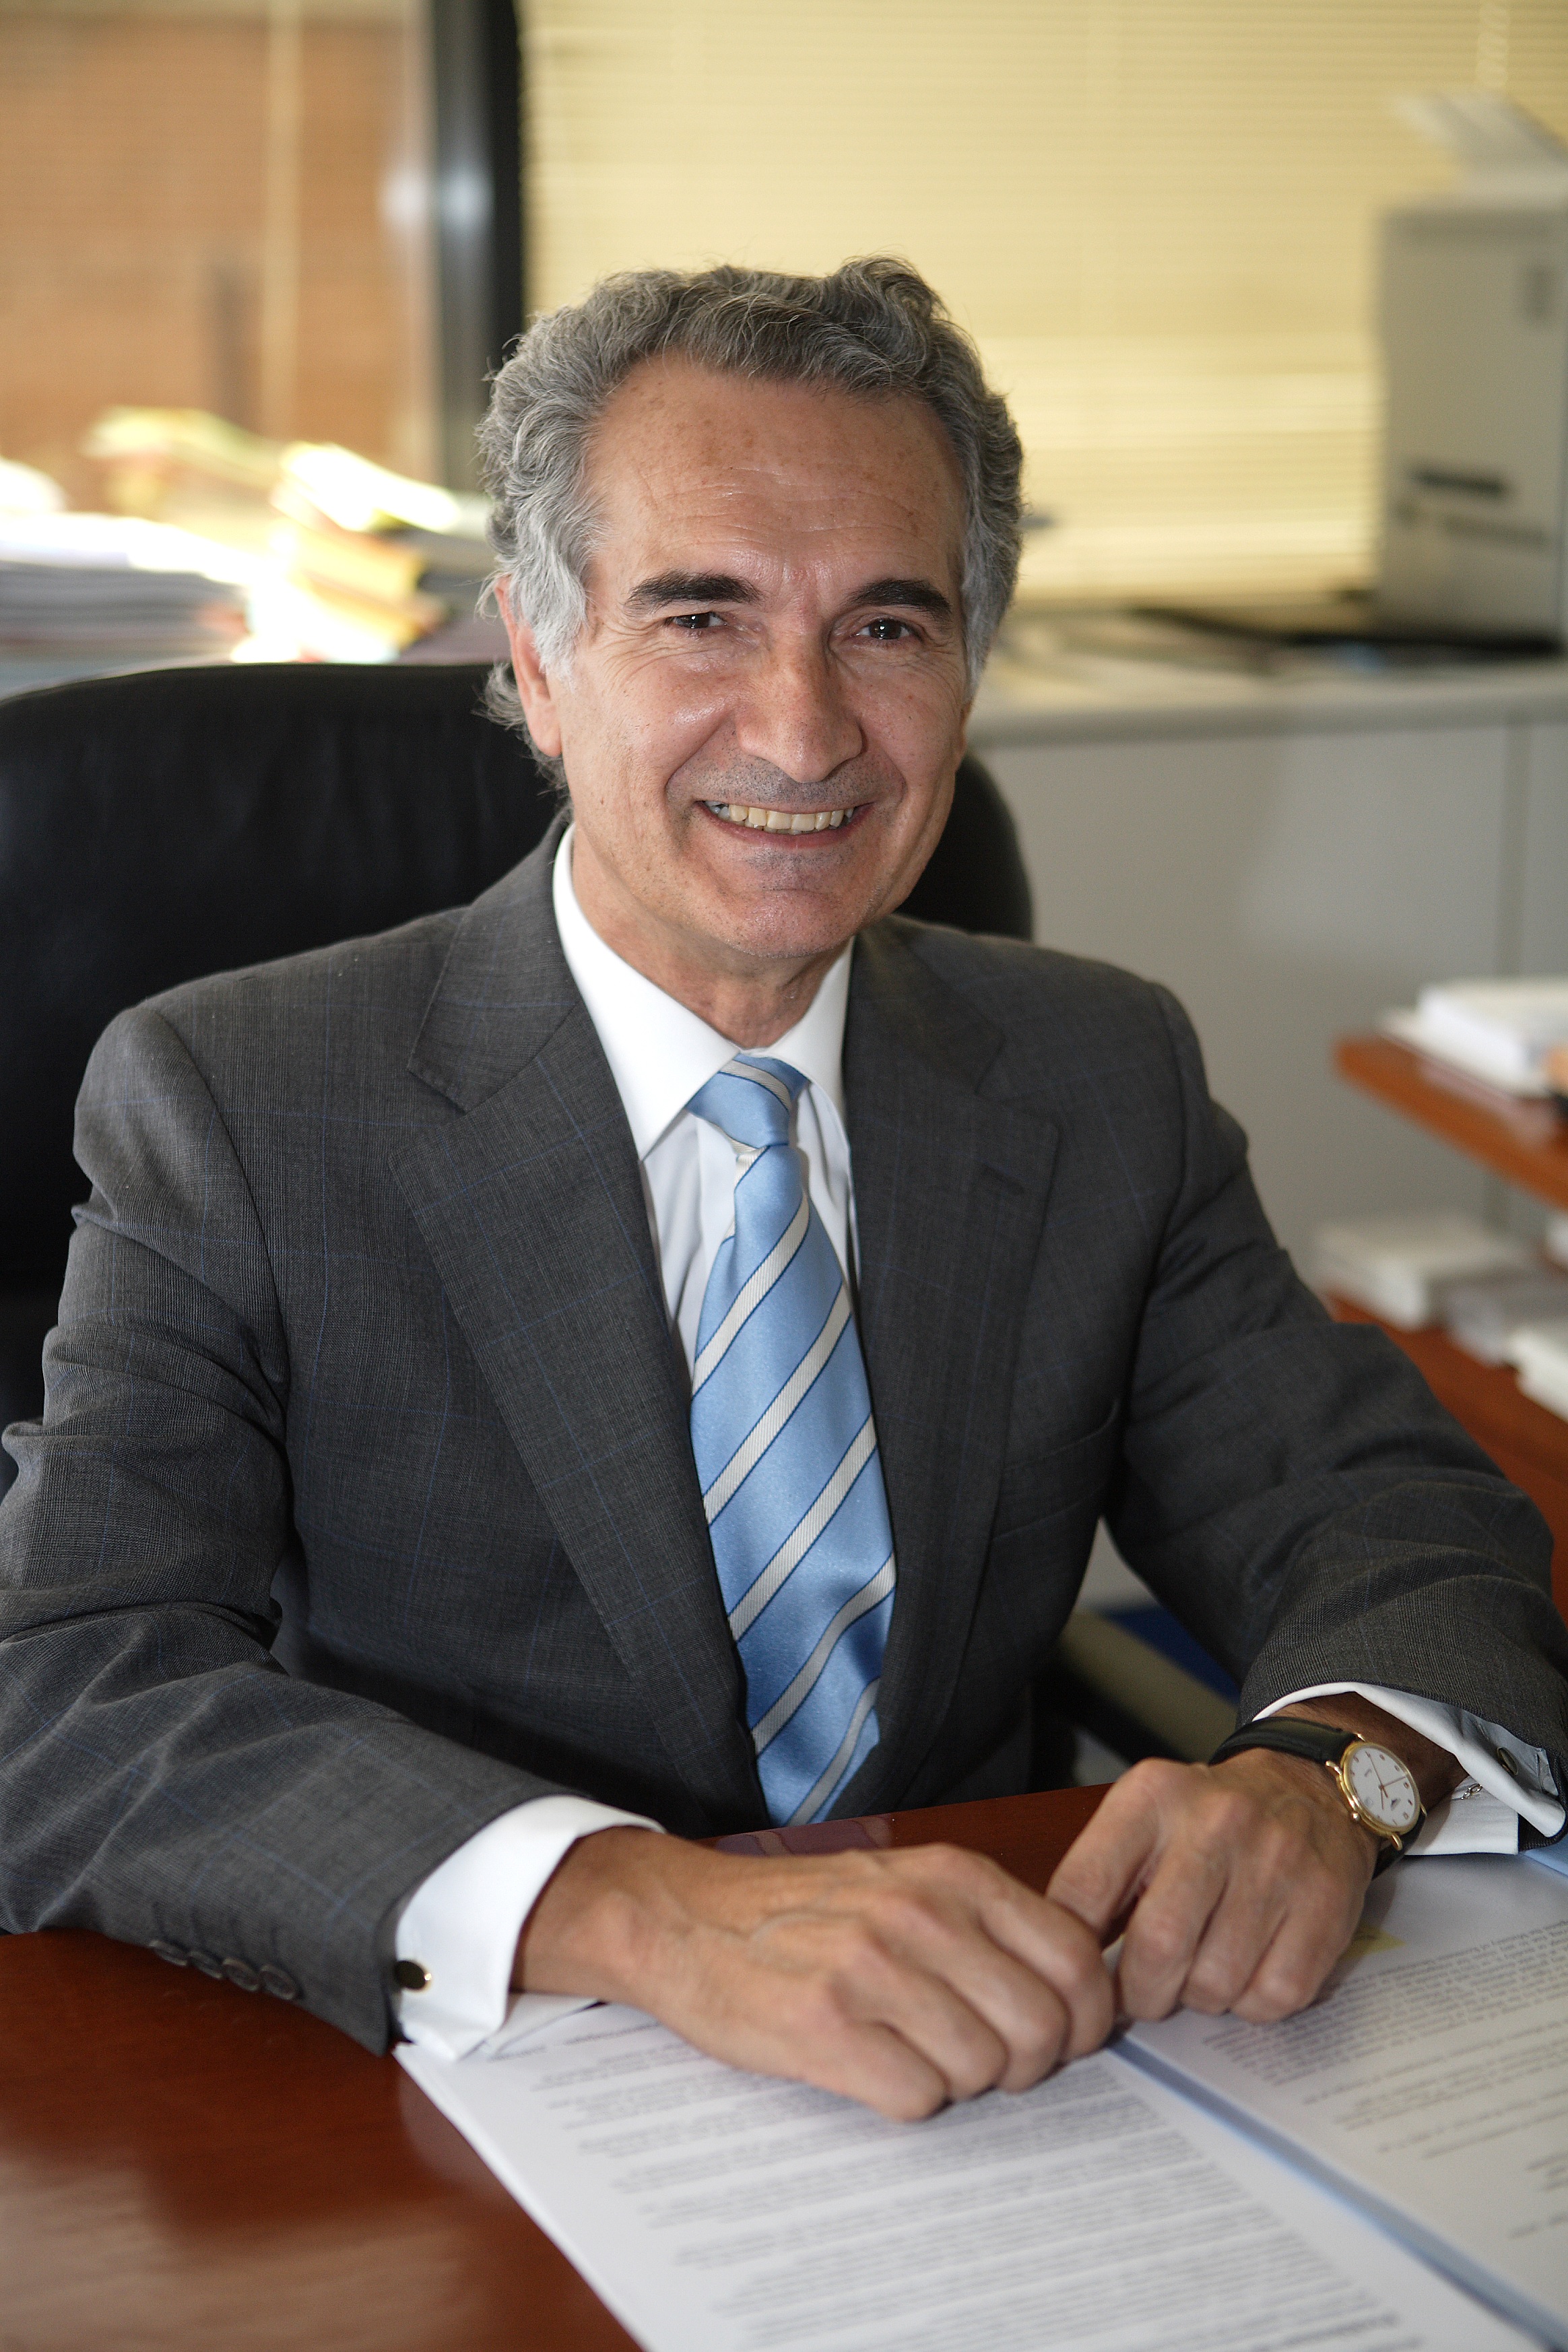 Fernando Moreno García, Chairman of FCC Construcción